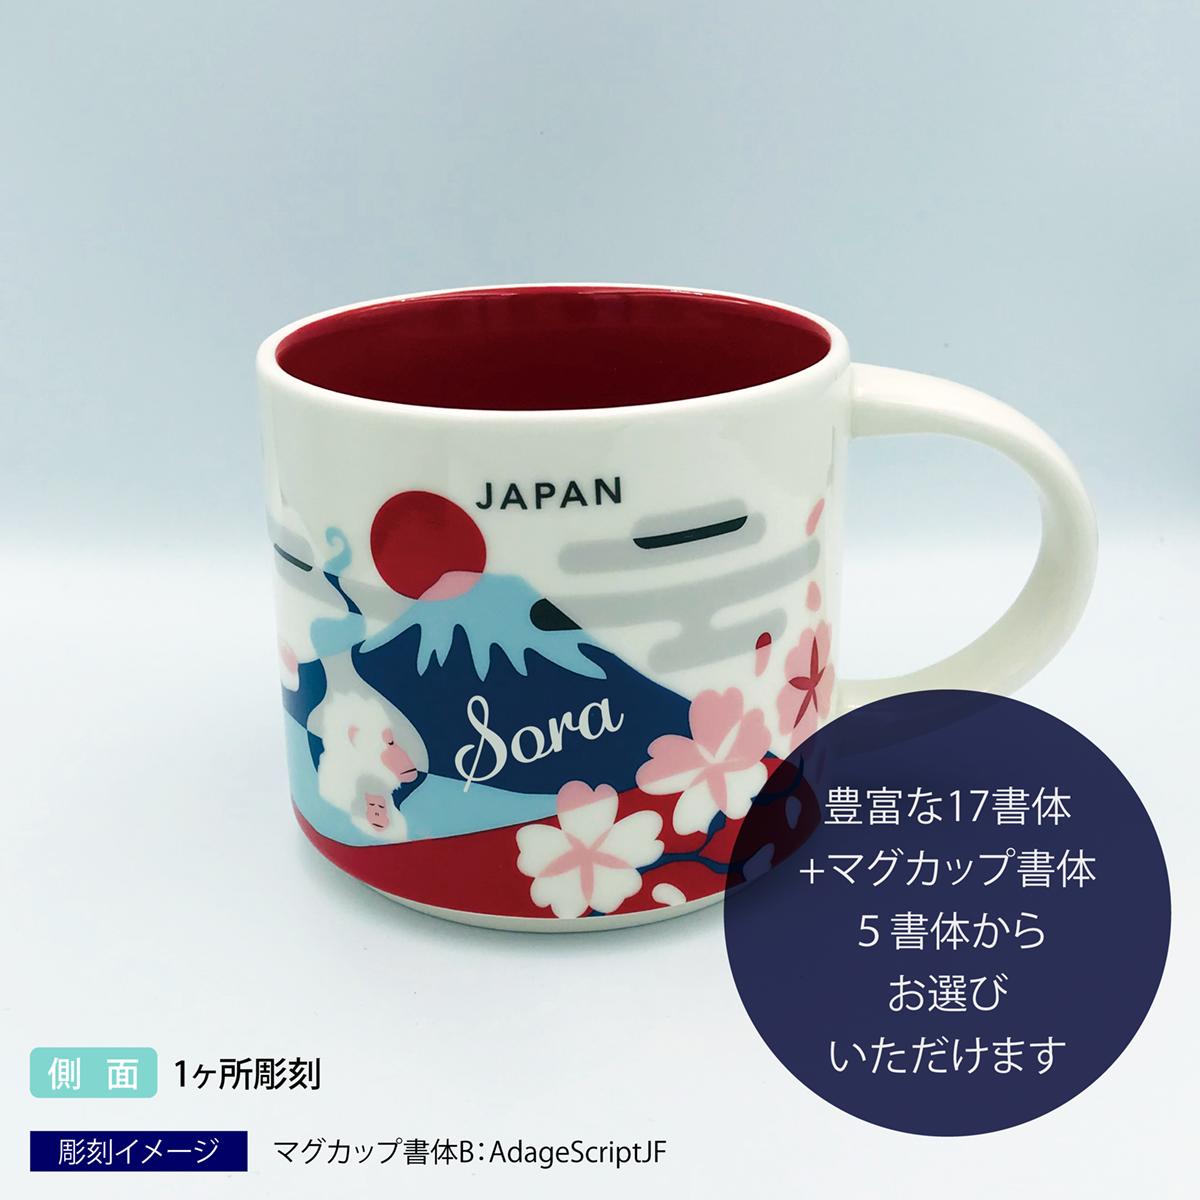 【送料無料】スターバックス STARBUCKS YYou Are Here Collection JAPANマグカップ 414ml【名入れ彫刻代込み】